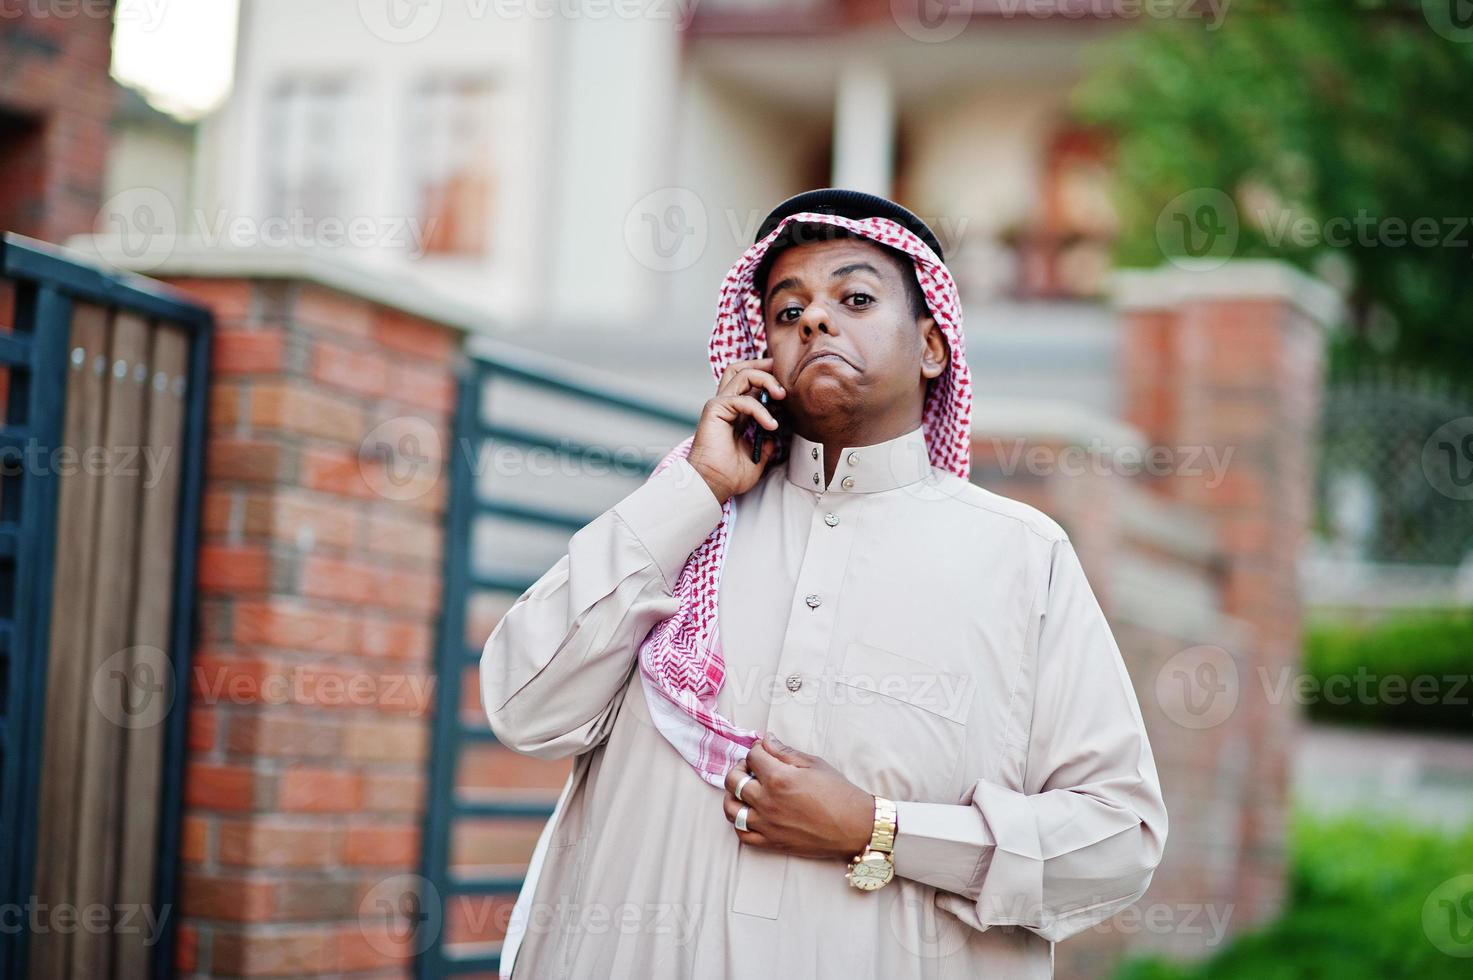 homme d'affaires arabe du moyen-orient posé dans la rue contre un bâtiment moderne avec téléphone portable et montrant des émotions surprises. photo